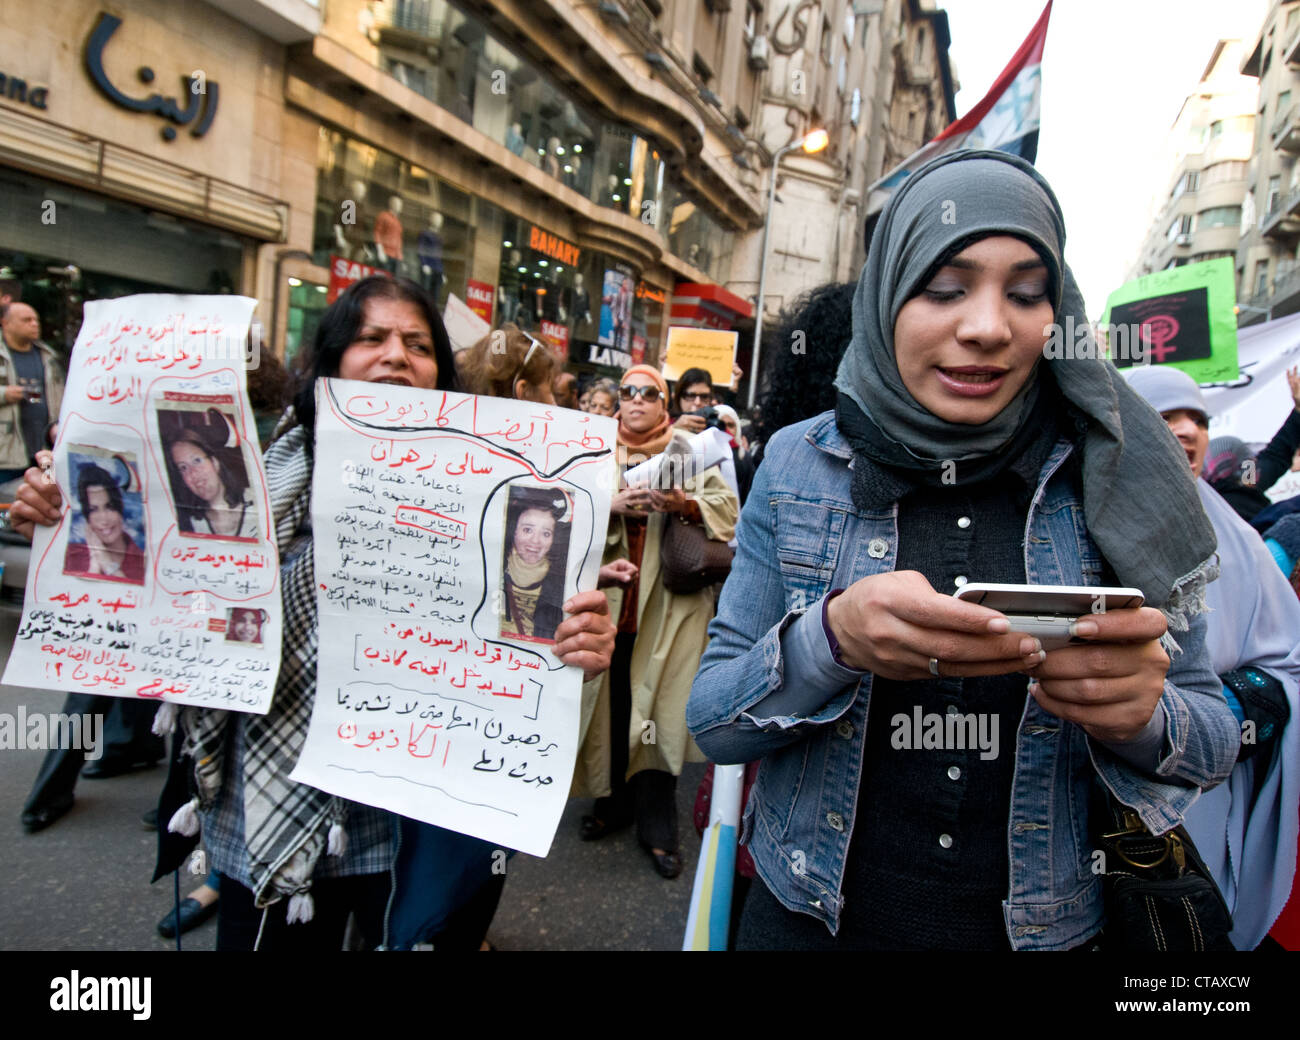 La journée internationale de la femme mars demande plus de représentation au gouvernement Cairo-Egyptian journaliste citoyen texting Banque D'Images